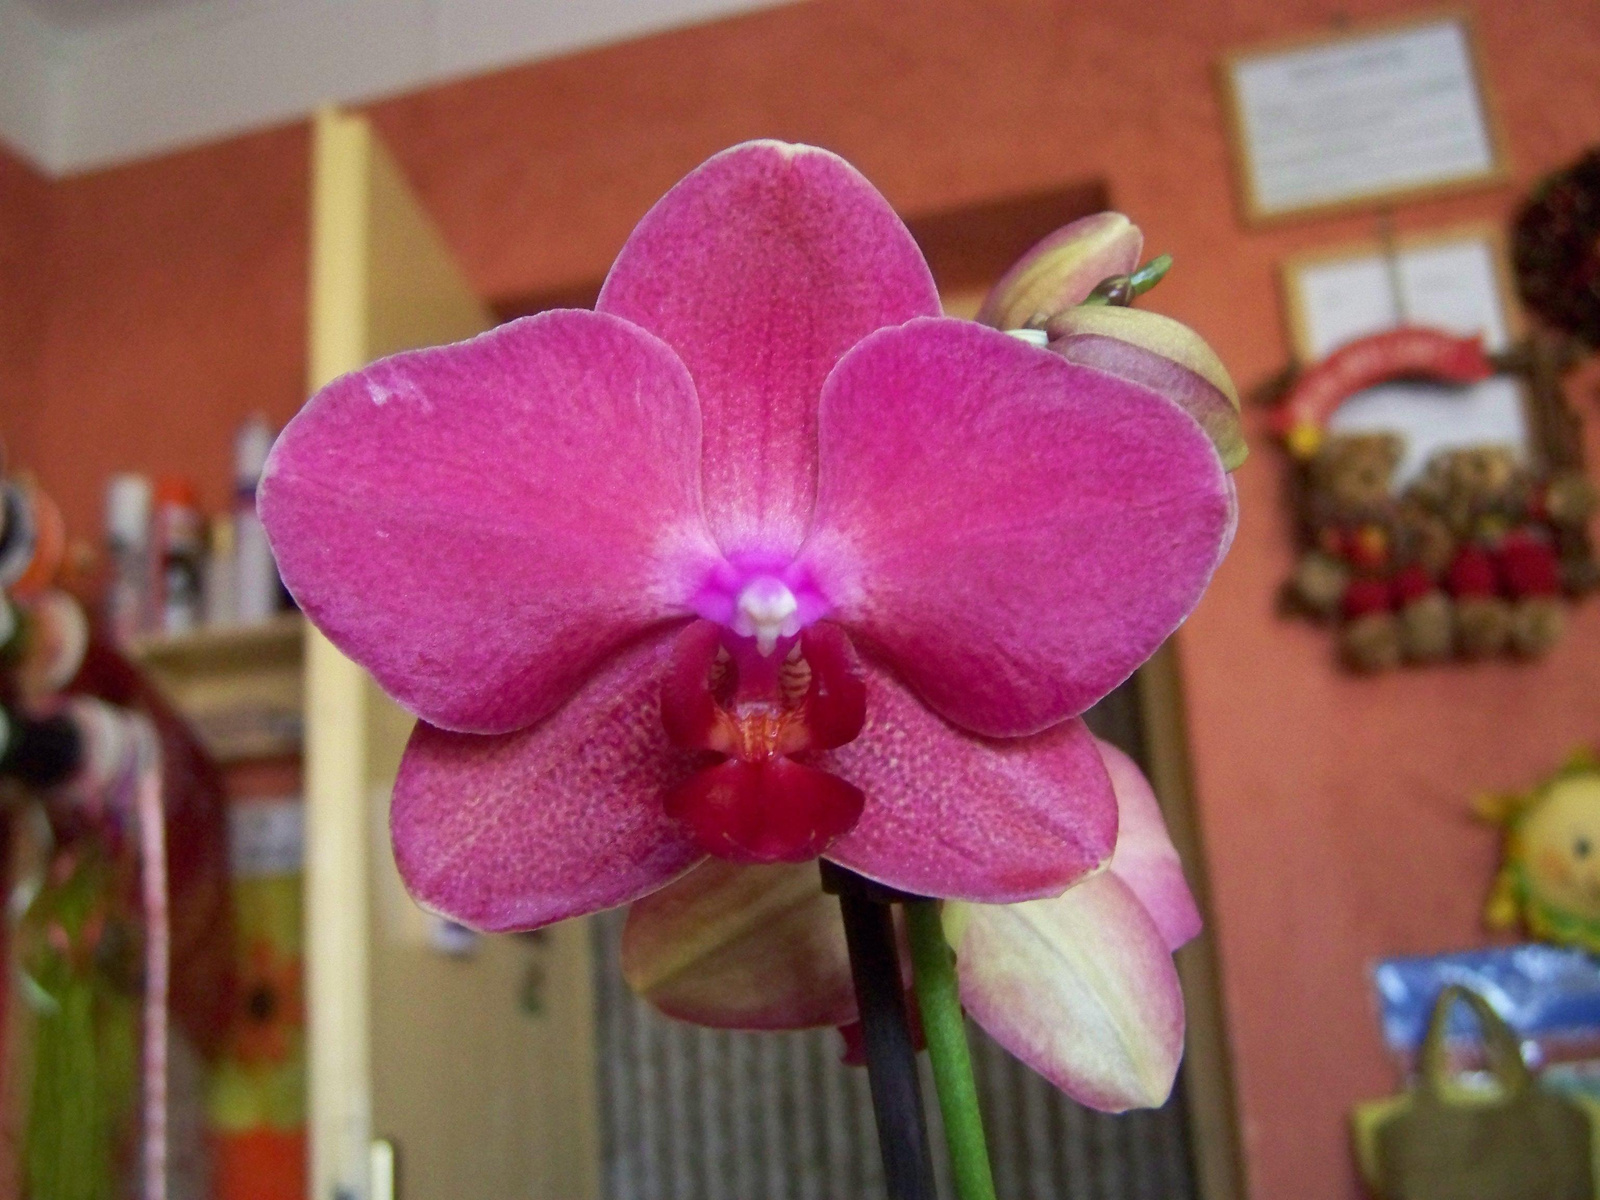 orchidea 0378